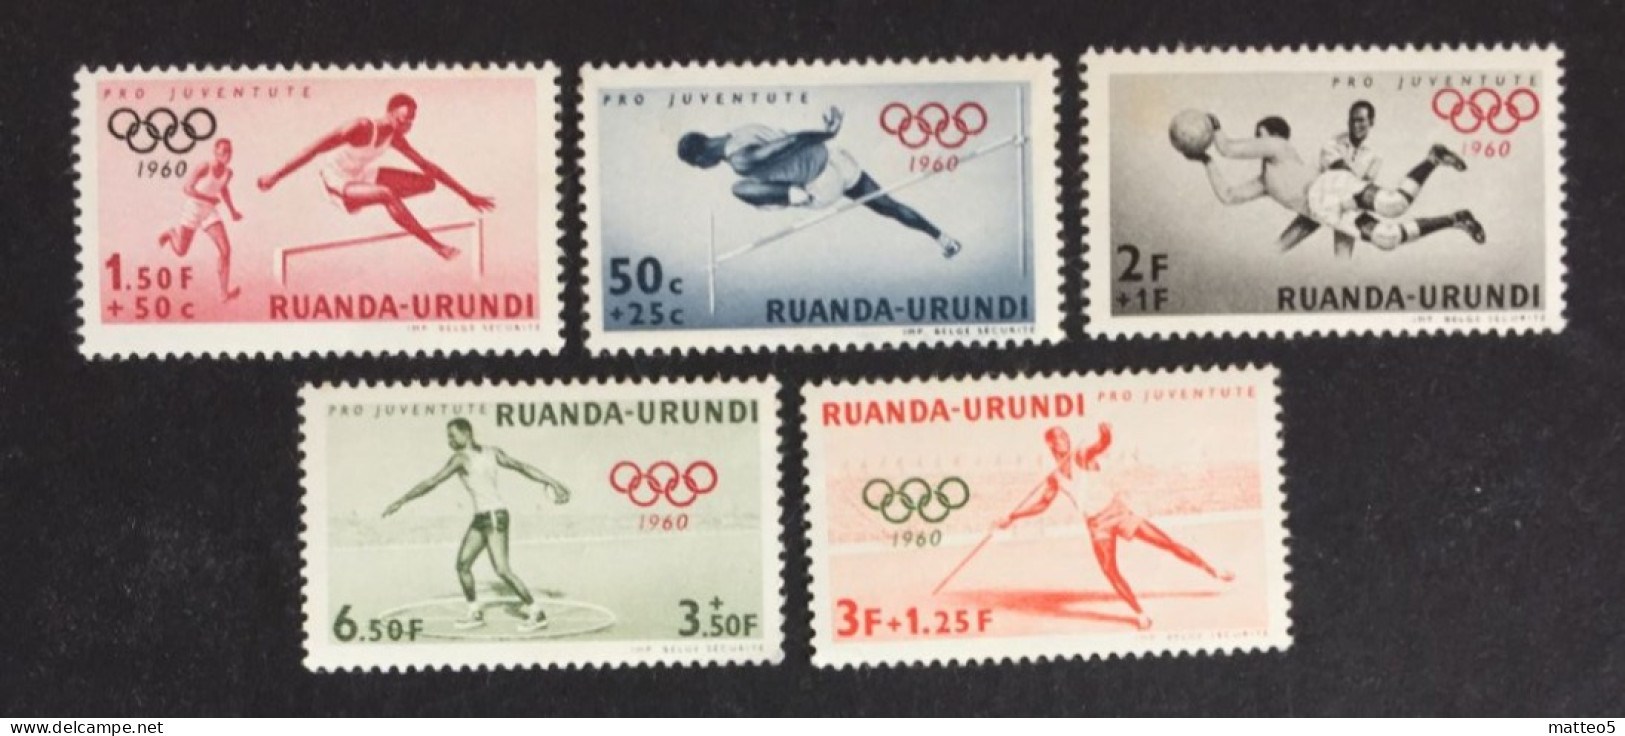 1960 - Rwanda Urundi - Summer Olympic Games 1960 - Rome - 5 Stamps Unused - Ungebraucht